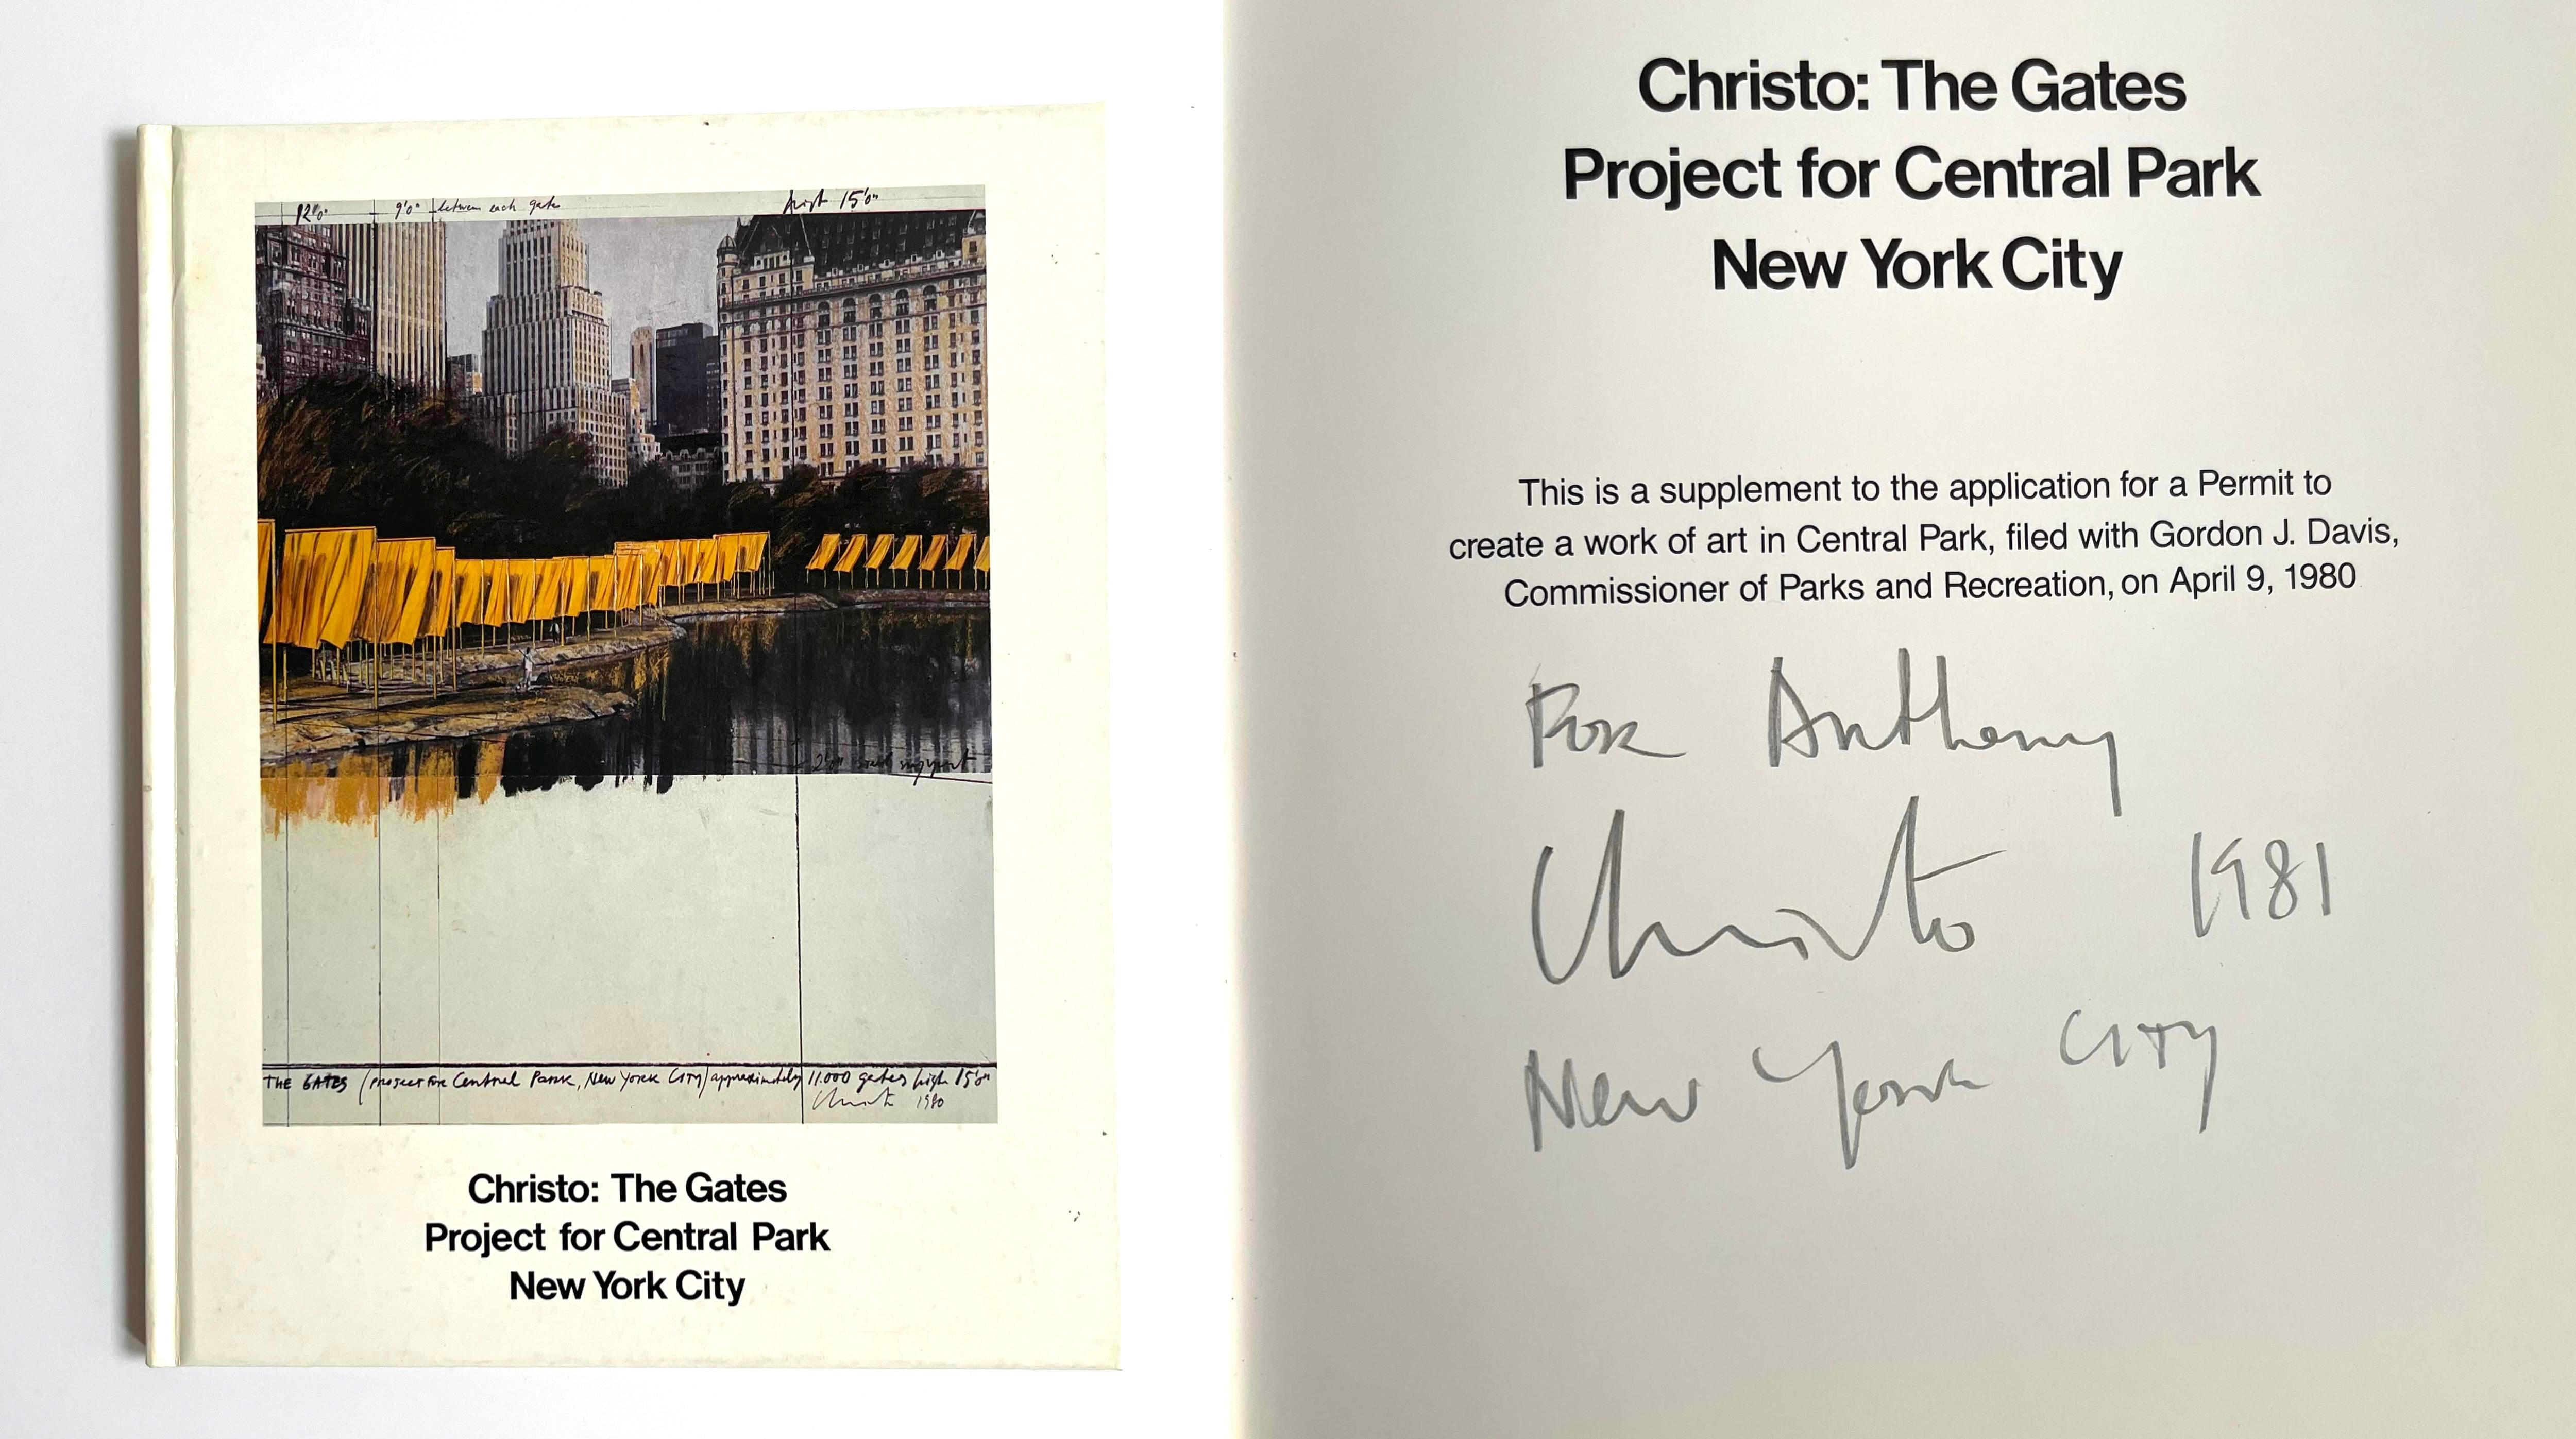 Livre :
Christo : The Gates Project for Central Park New York City (signé et inscrit à la main par le critique d'art Anthony Haden-Guest), 1981
Monographie brochée 
Signature et inscription à la main du critique d'art, écrivain et homme de la ville